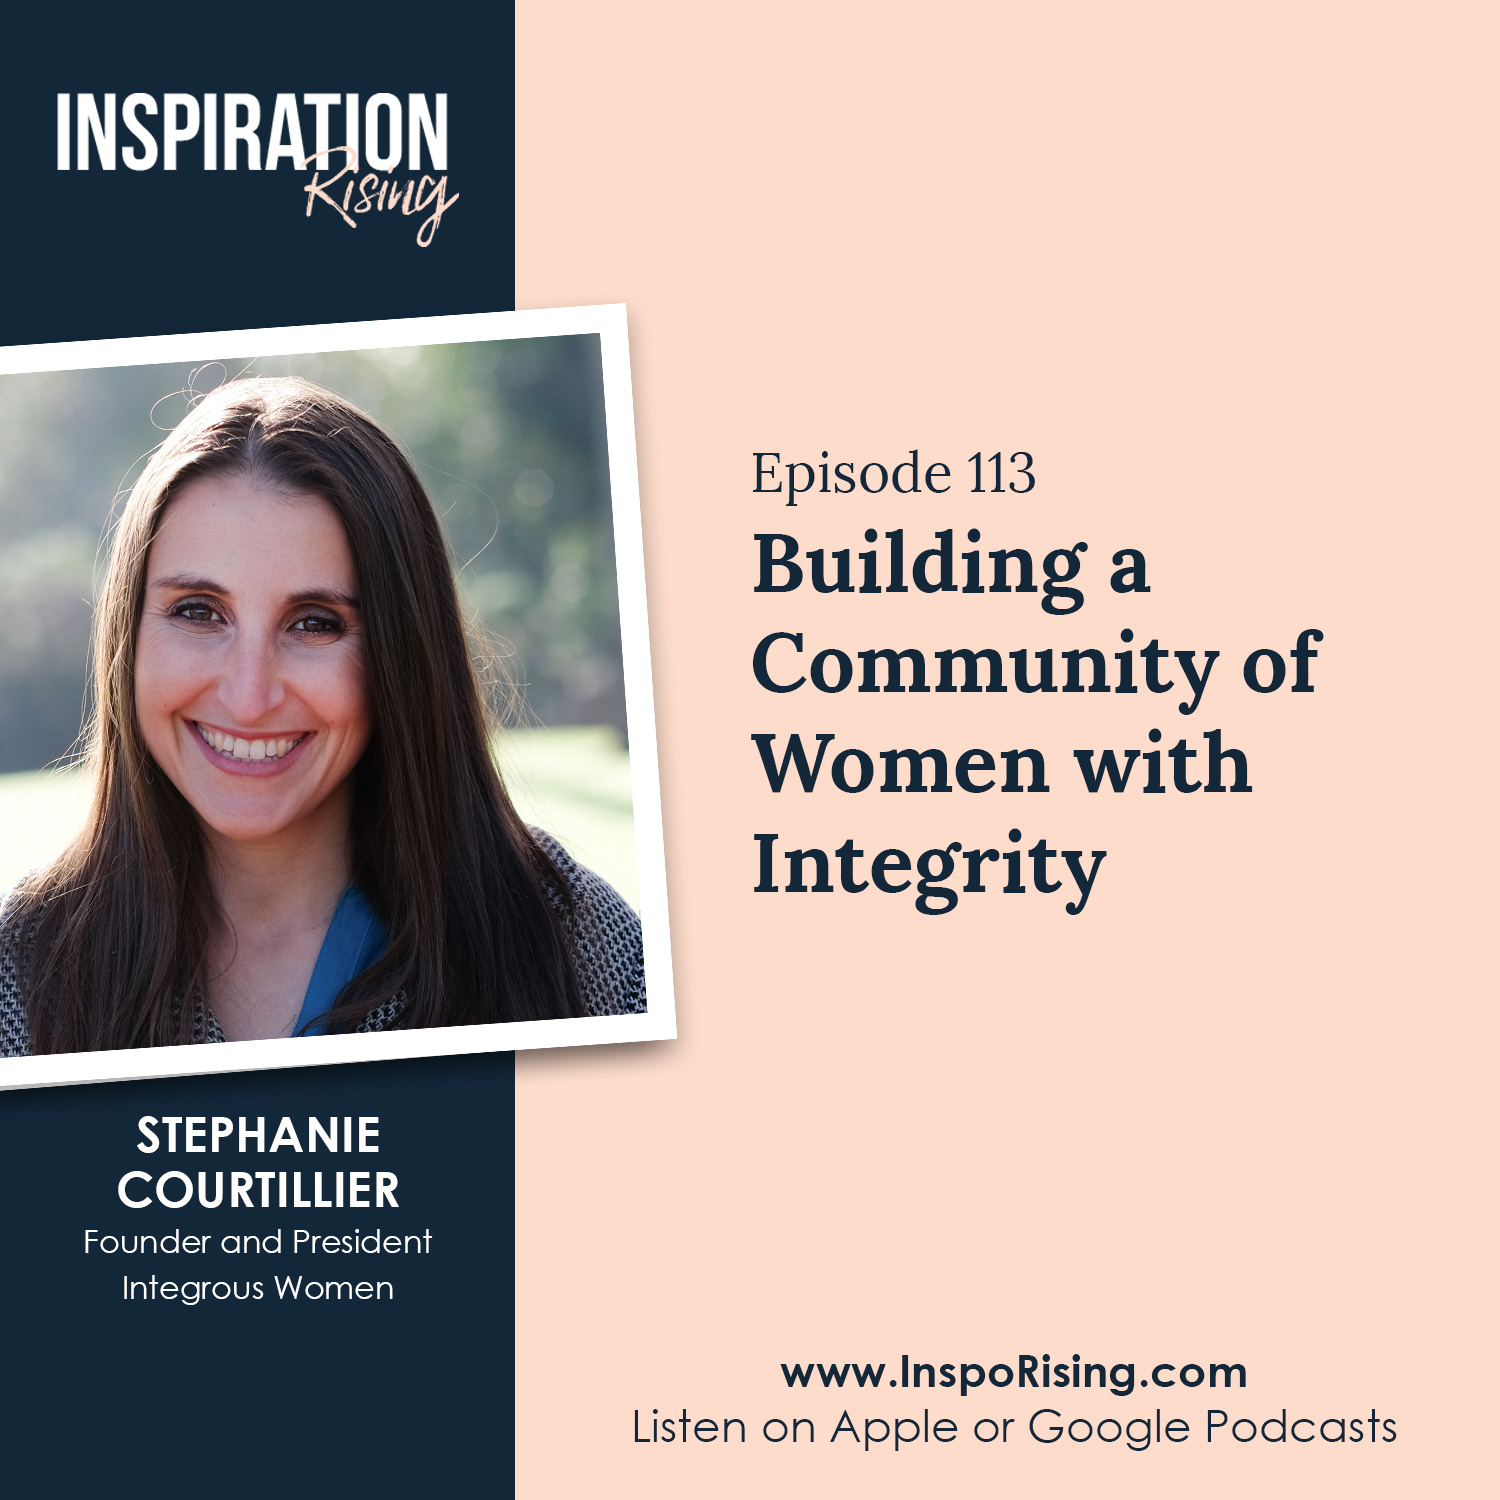 Stephanie Courtillier - Integrous Women